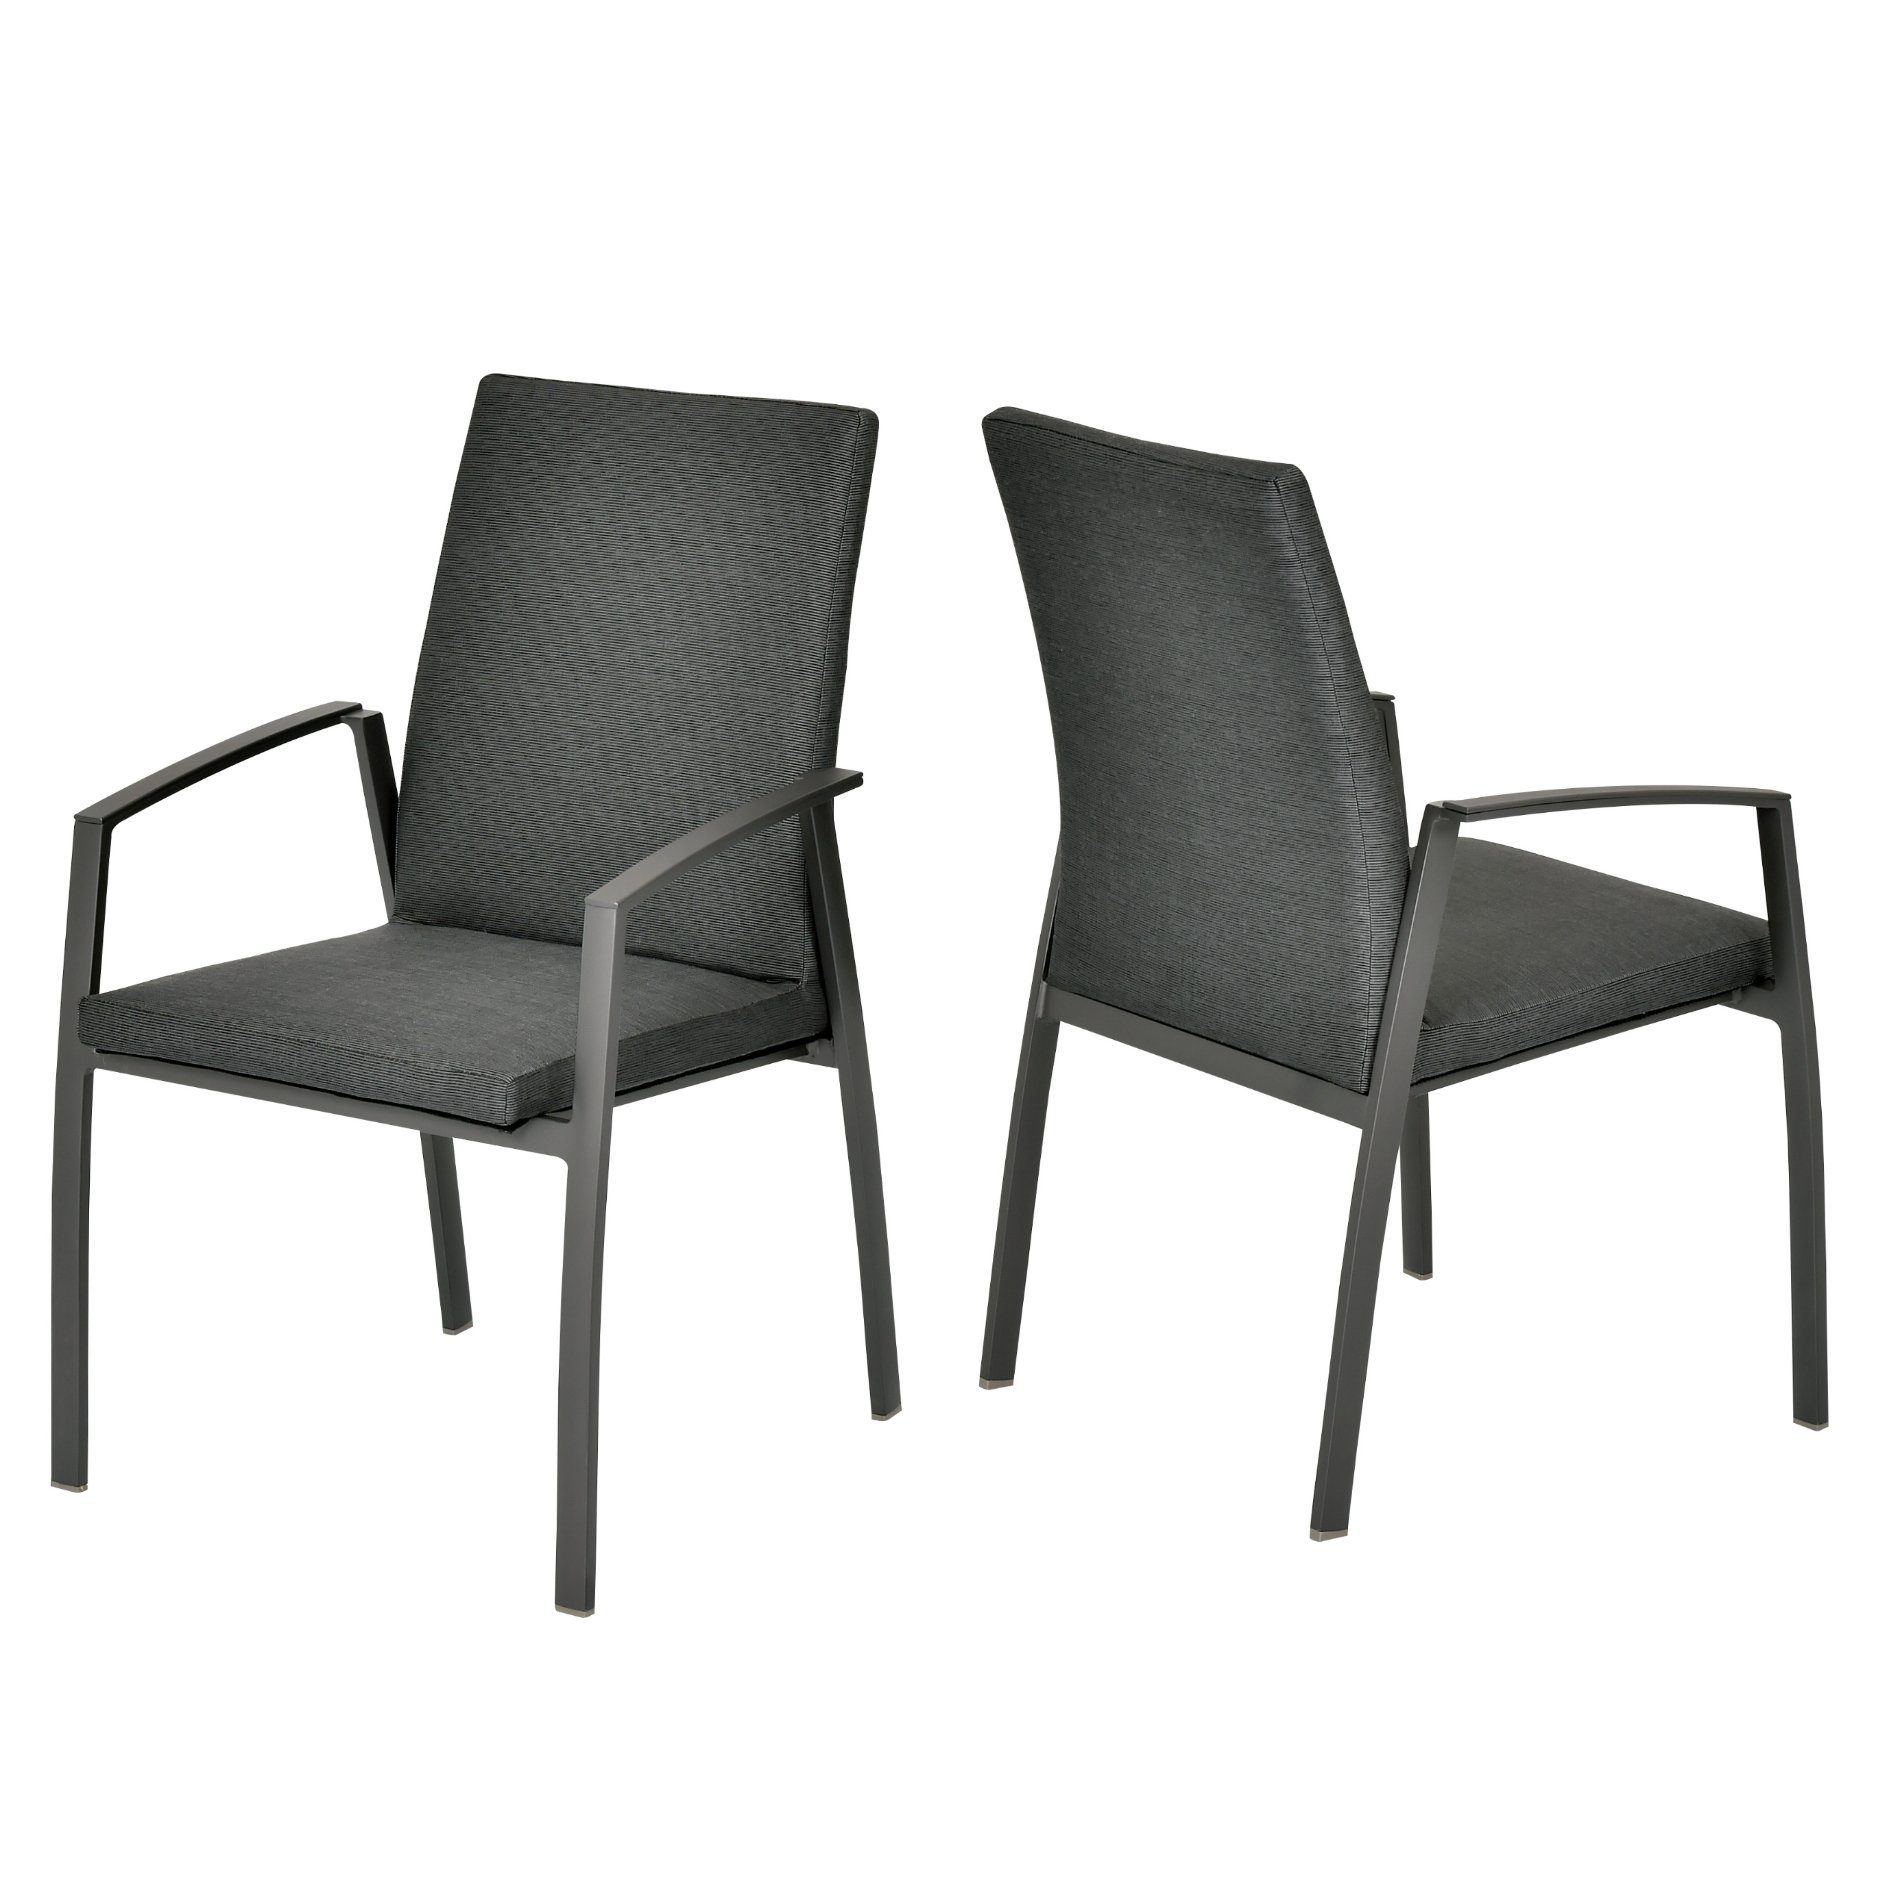 SIT Mobilia "Portimao" Stapelstuhl, Gestell Aluminium eisengrau, Sitzfläche Textilgewebe Eden black, gepolstert